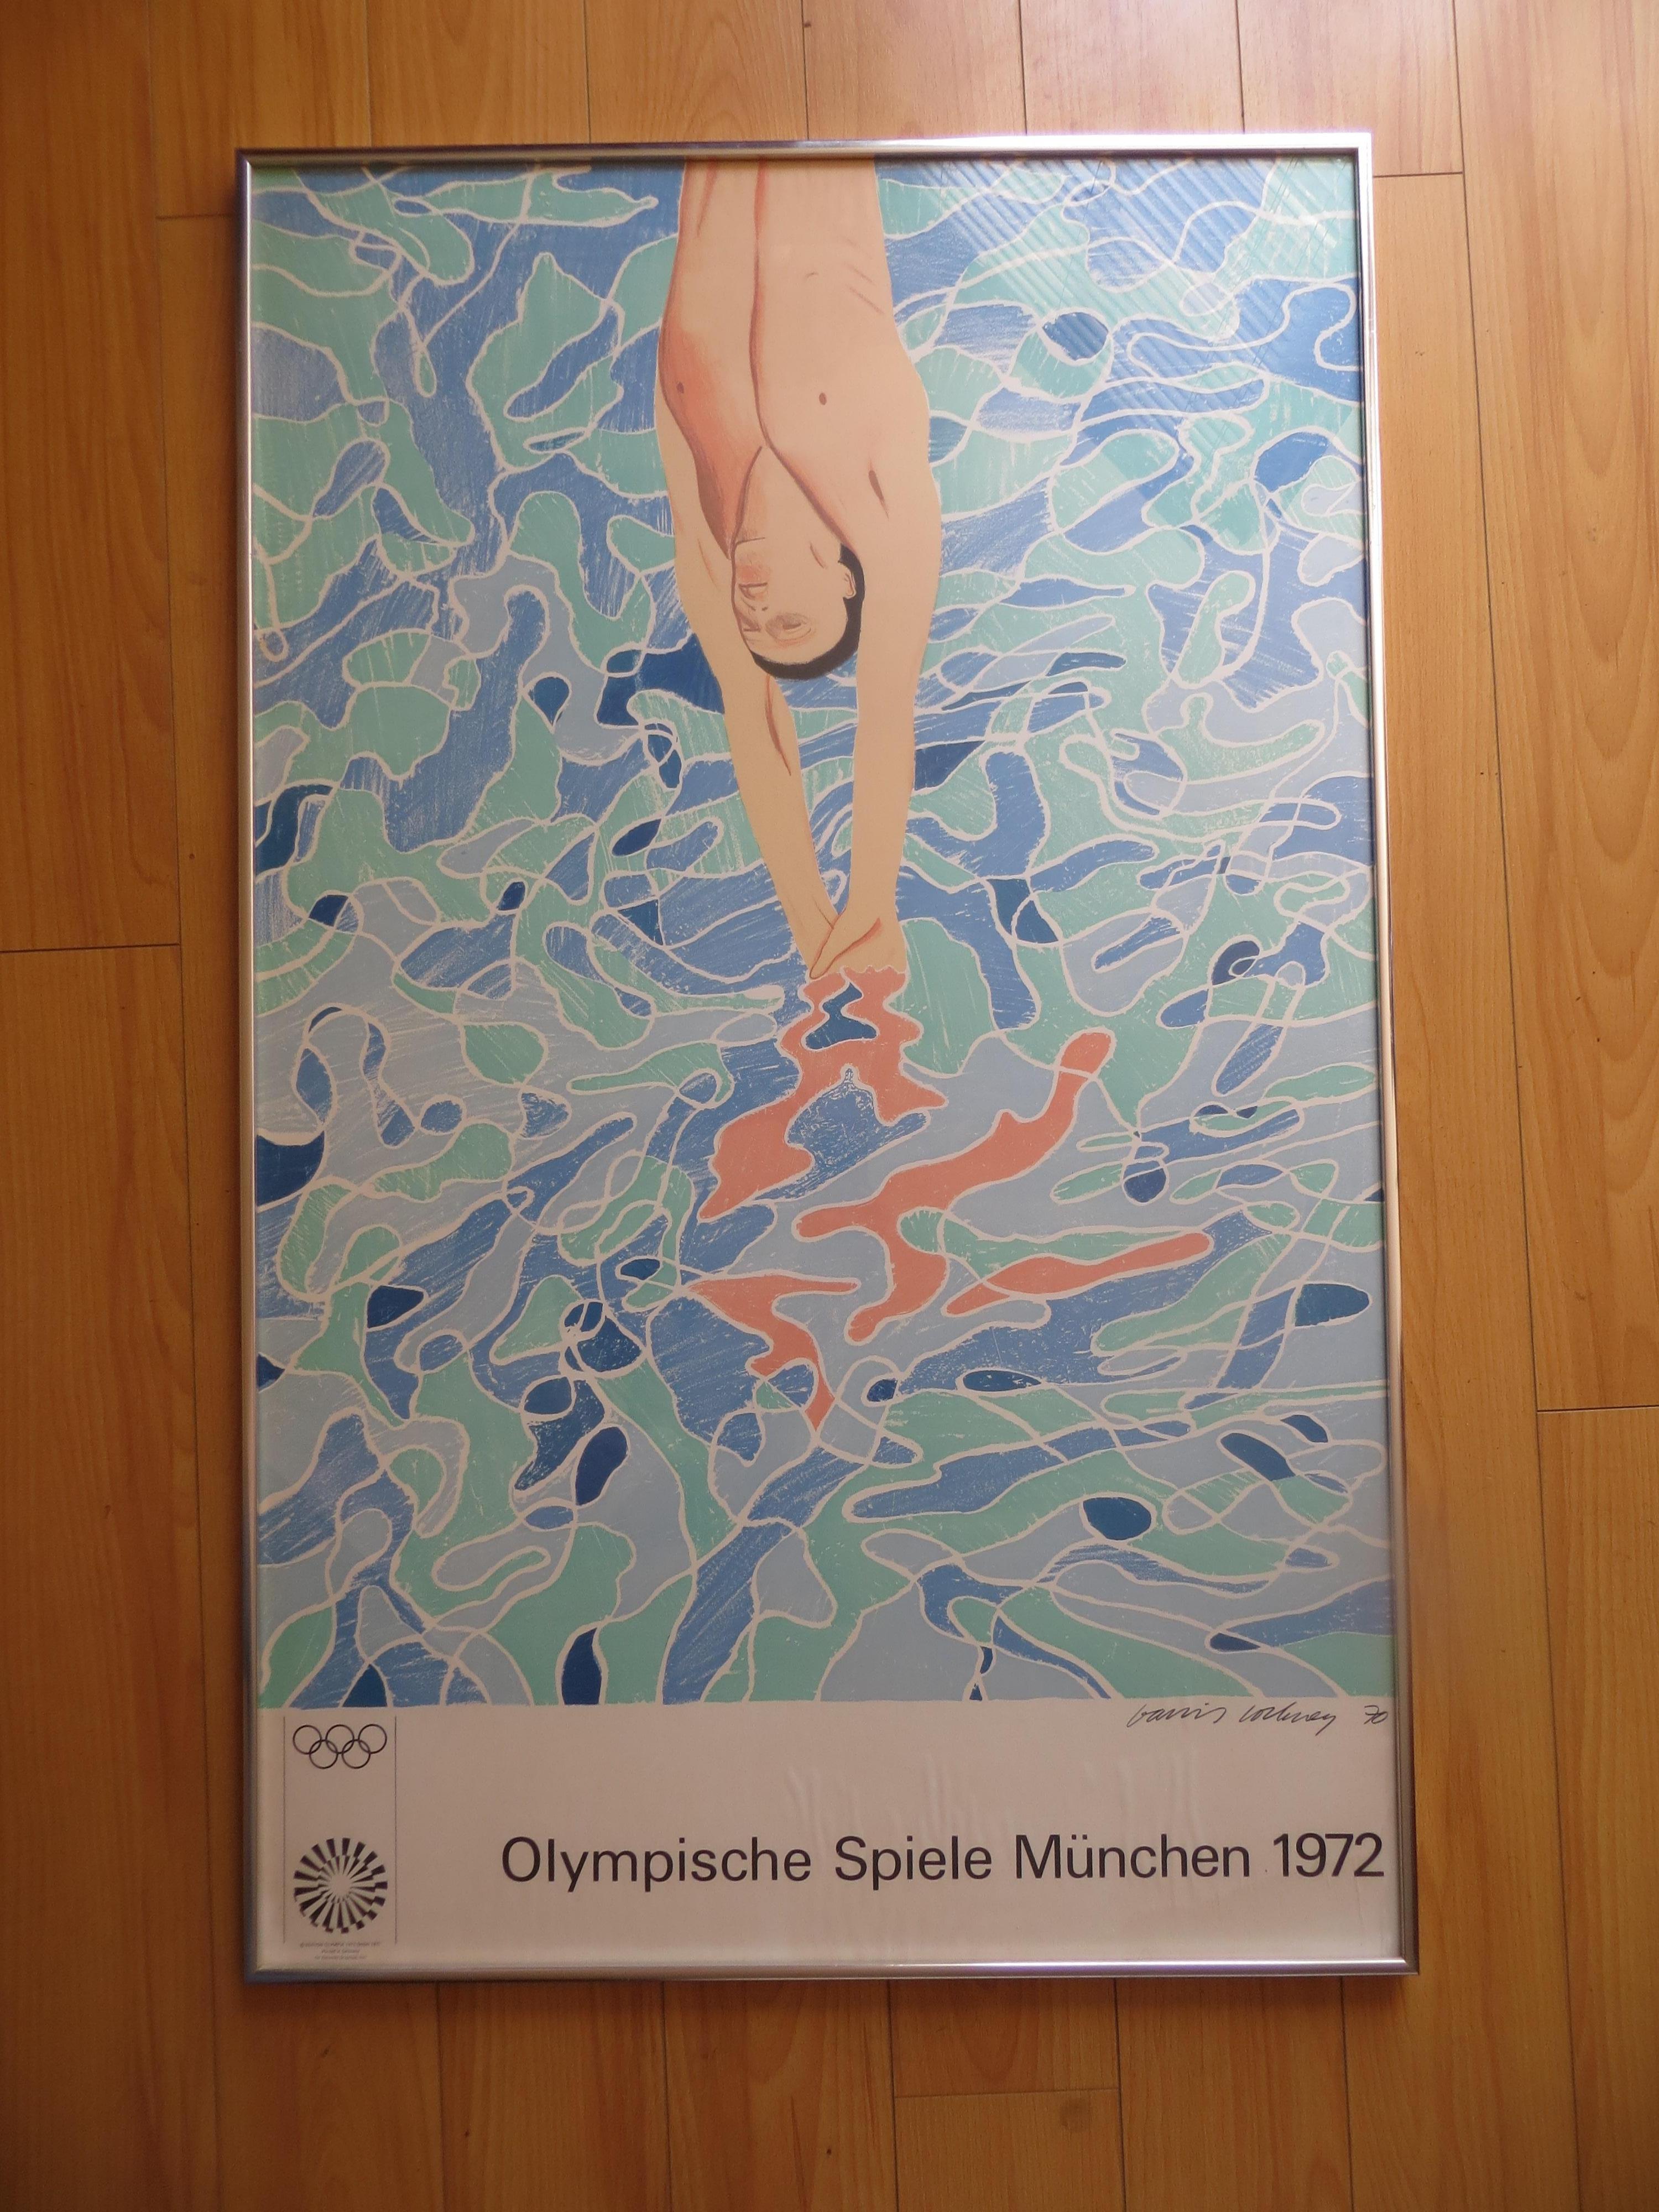 (after) David Hockney Figurative Print – David Hockney, Olympische Spiele München  Drucken  Plakat, 1972 